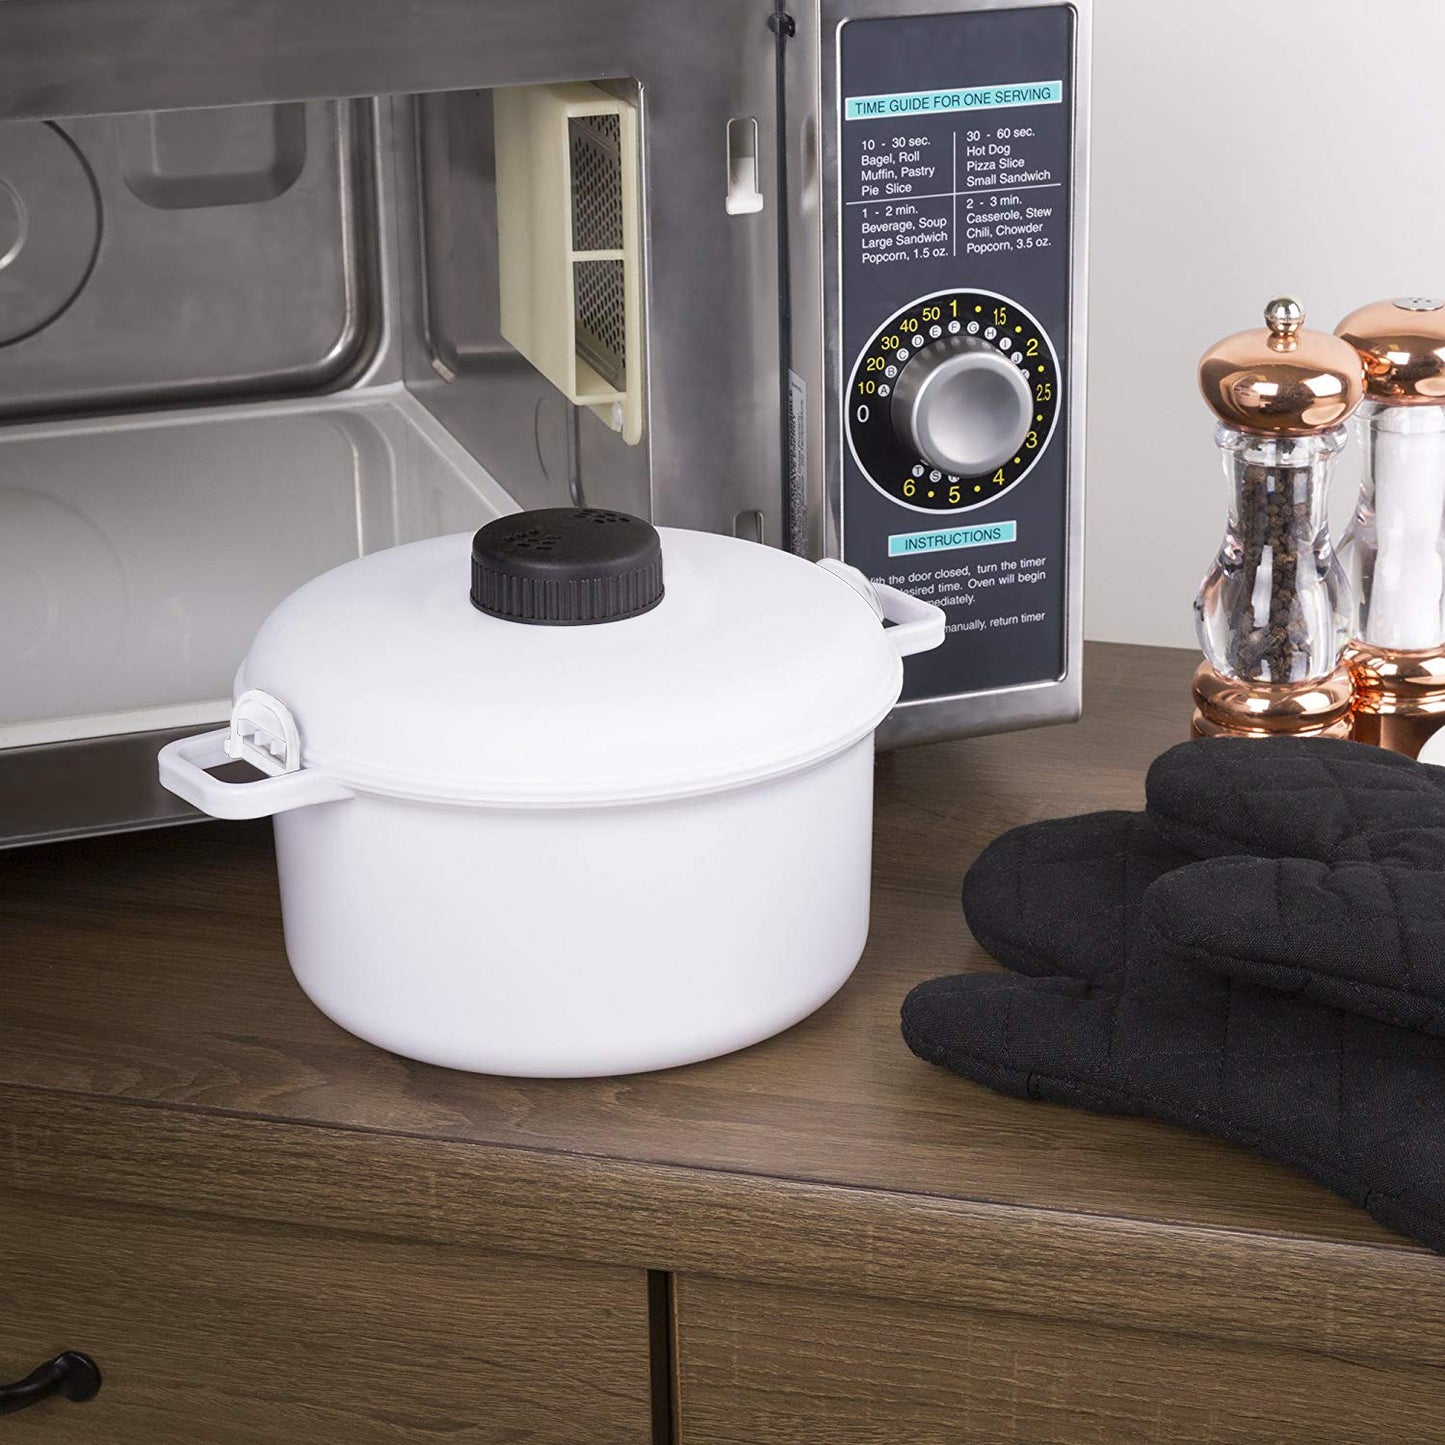 Bene Casa 33868 5.3-quart stainless steel pressure cooker. 